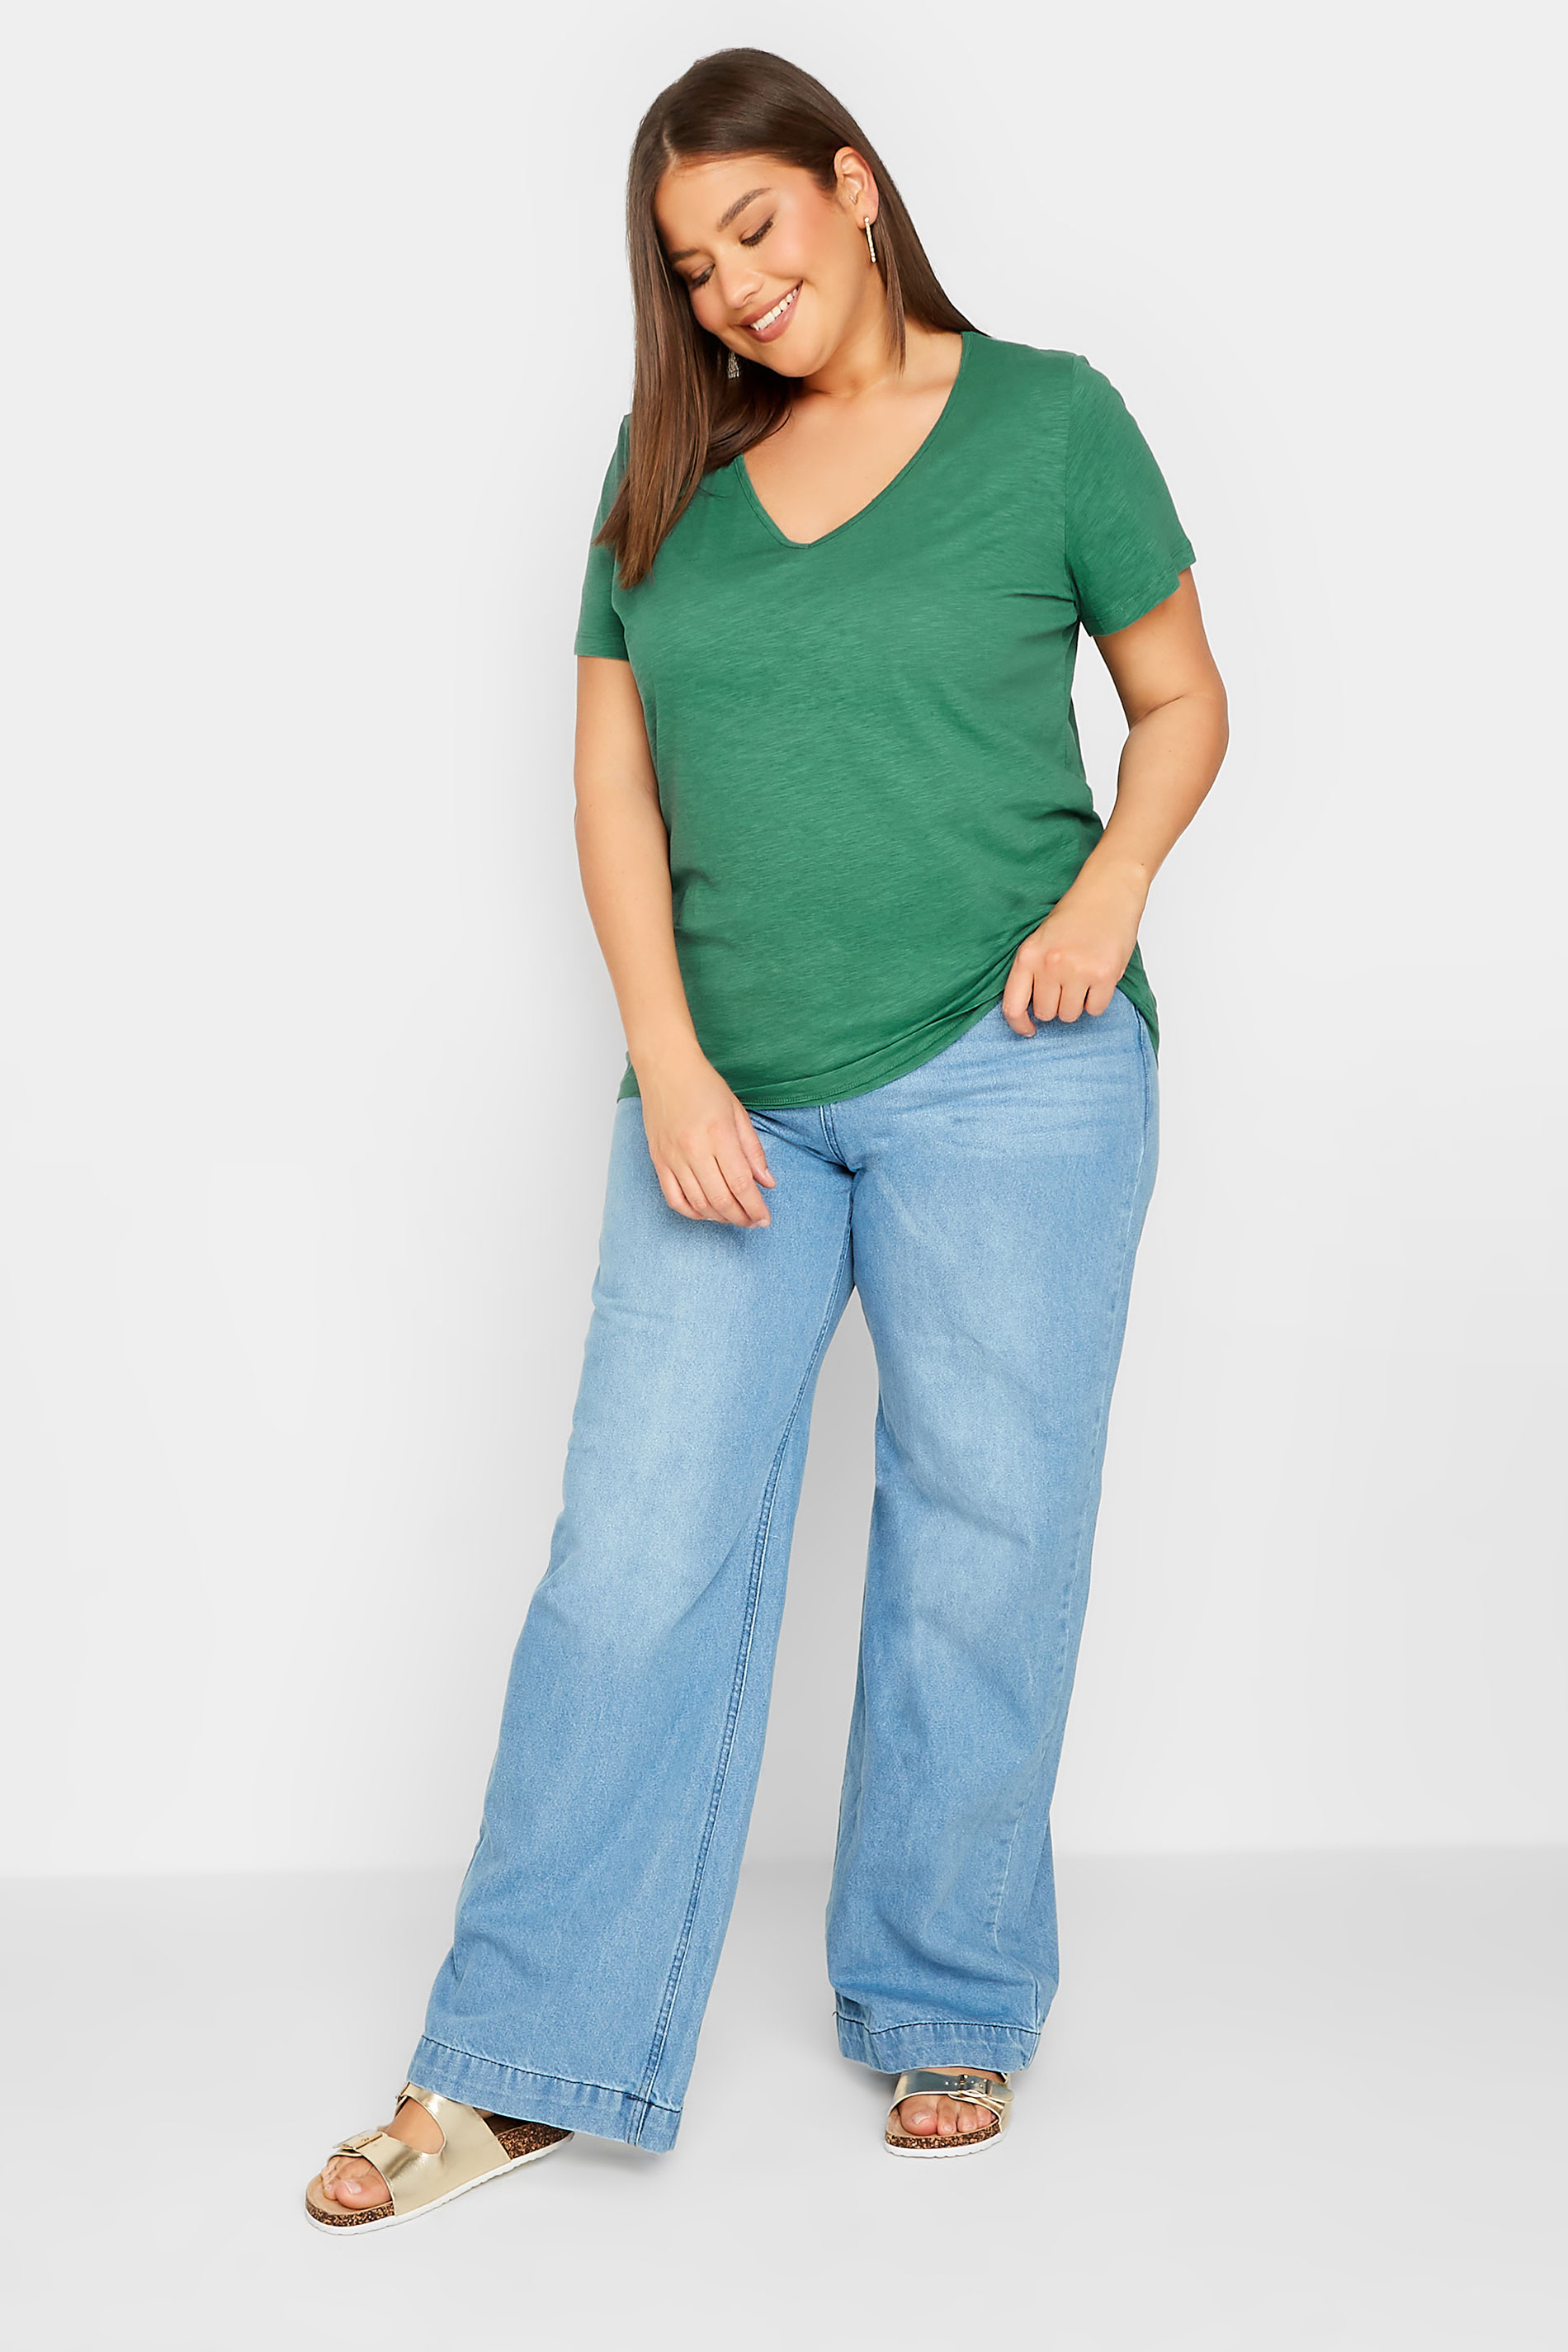 LTS Tall Women's Green Short Sleeve Cotton T-Shirt | Long Tall Sally  2